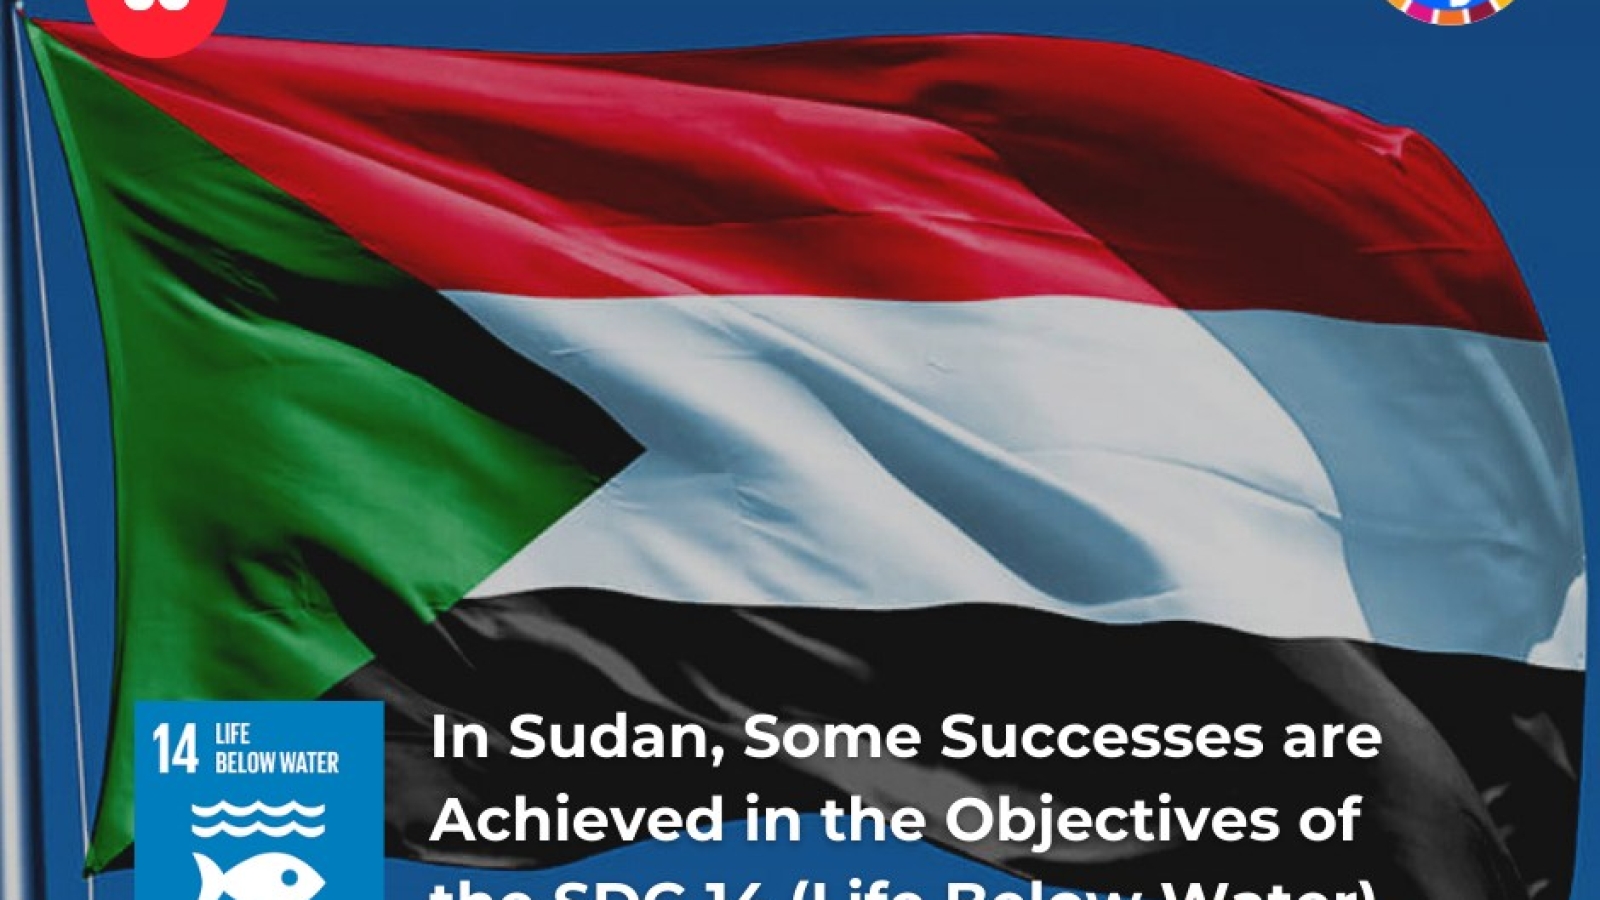 Au Soudan, certains succès sont obtenus dans les objectifs de l'ODD 14 (Vie sous l'eau)